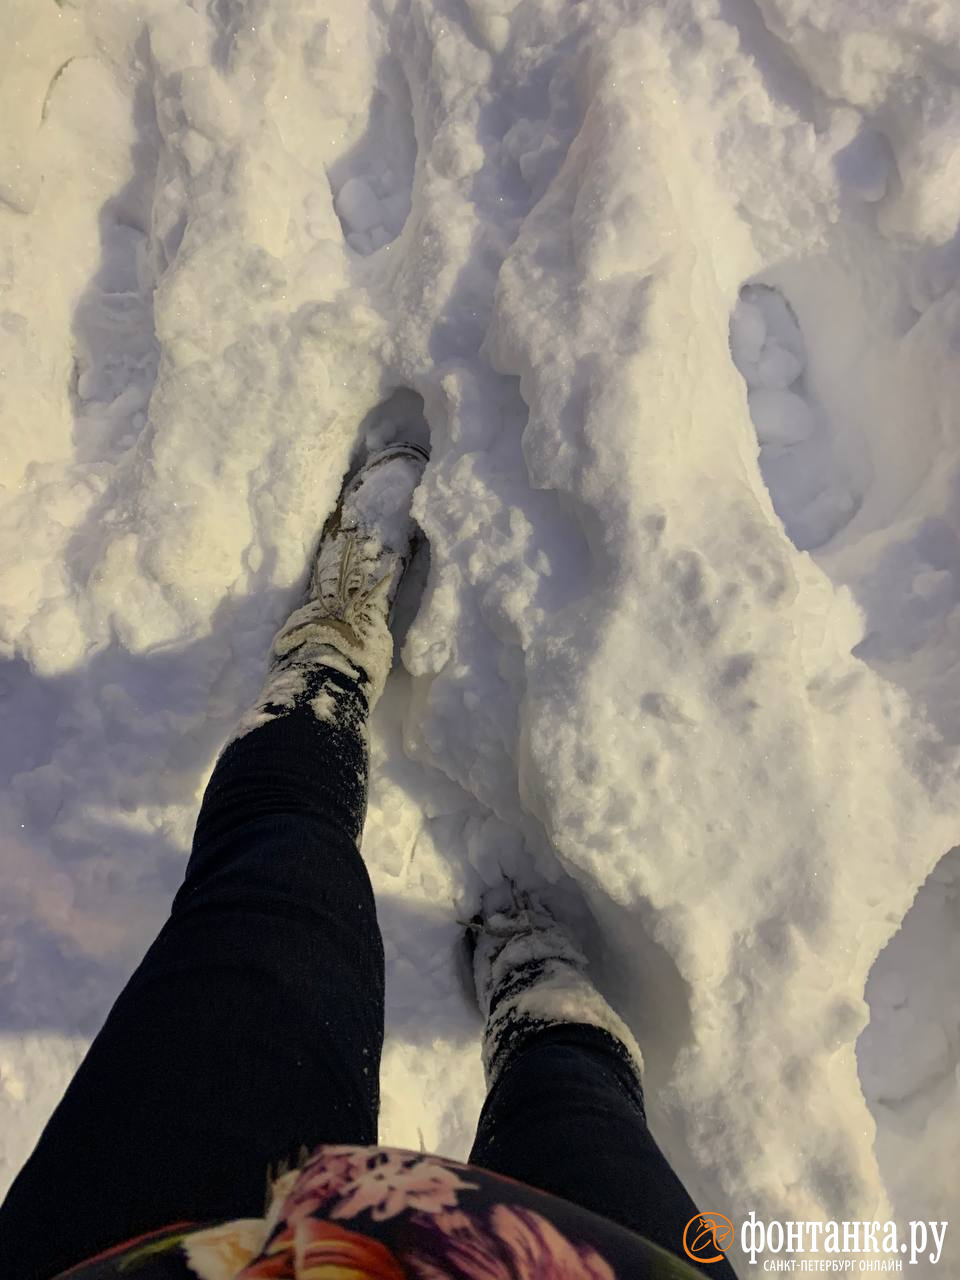 Снег забился в ботинки